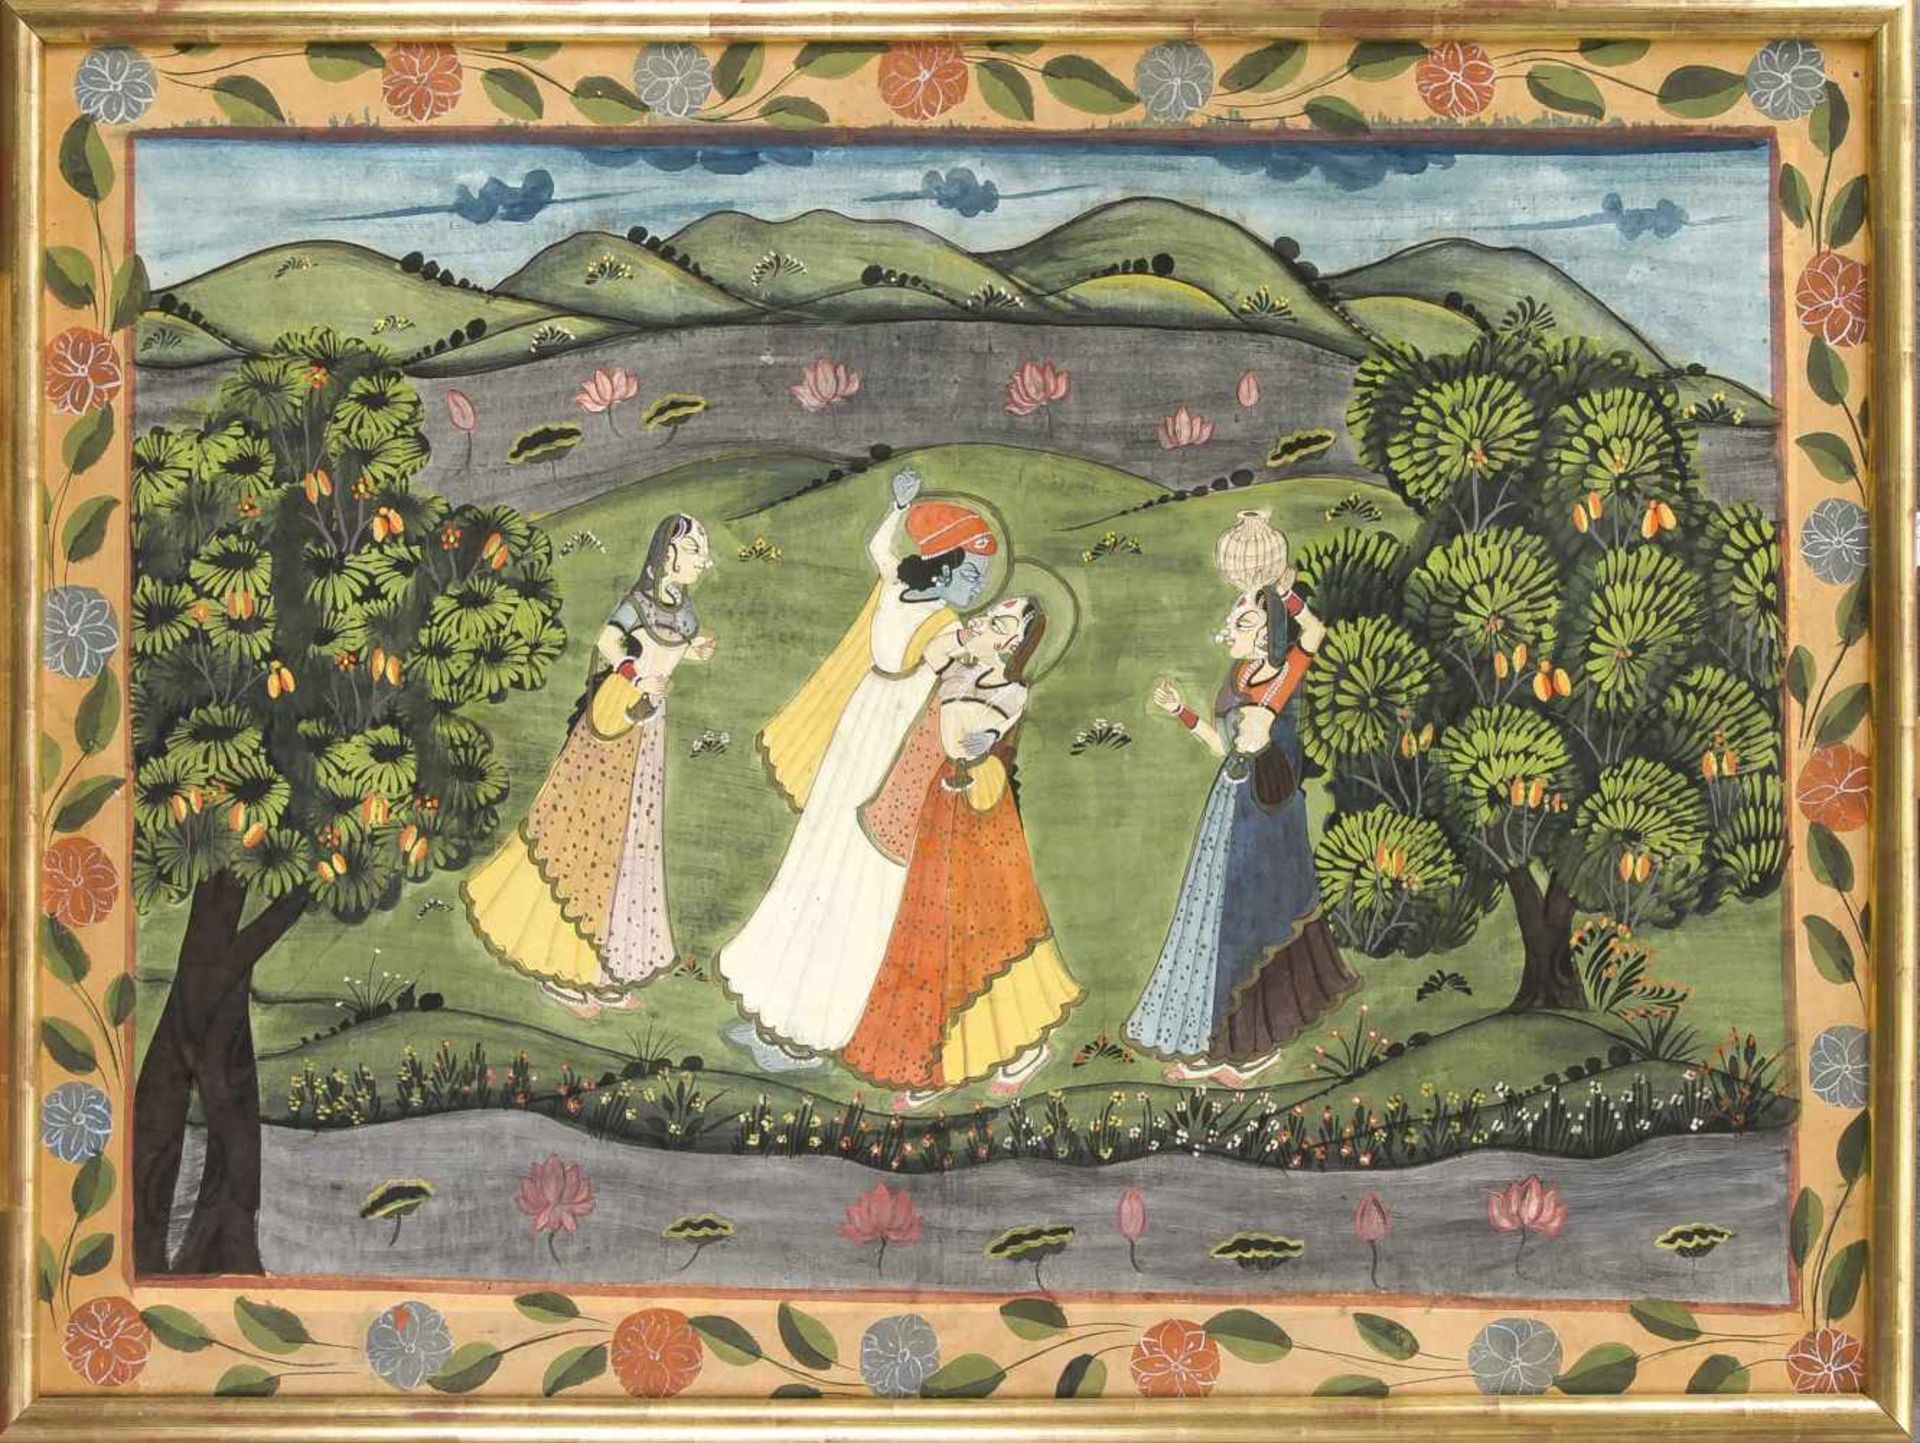 Indische Malerei, spätes 19./frühes 20. Jh., polychrome Pigmente auf Leinen, kaschiert auf